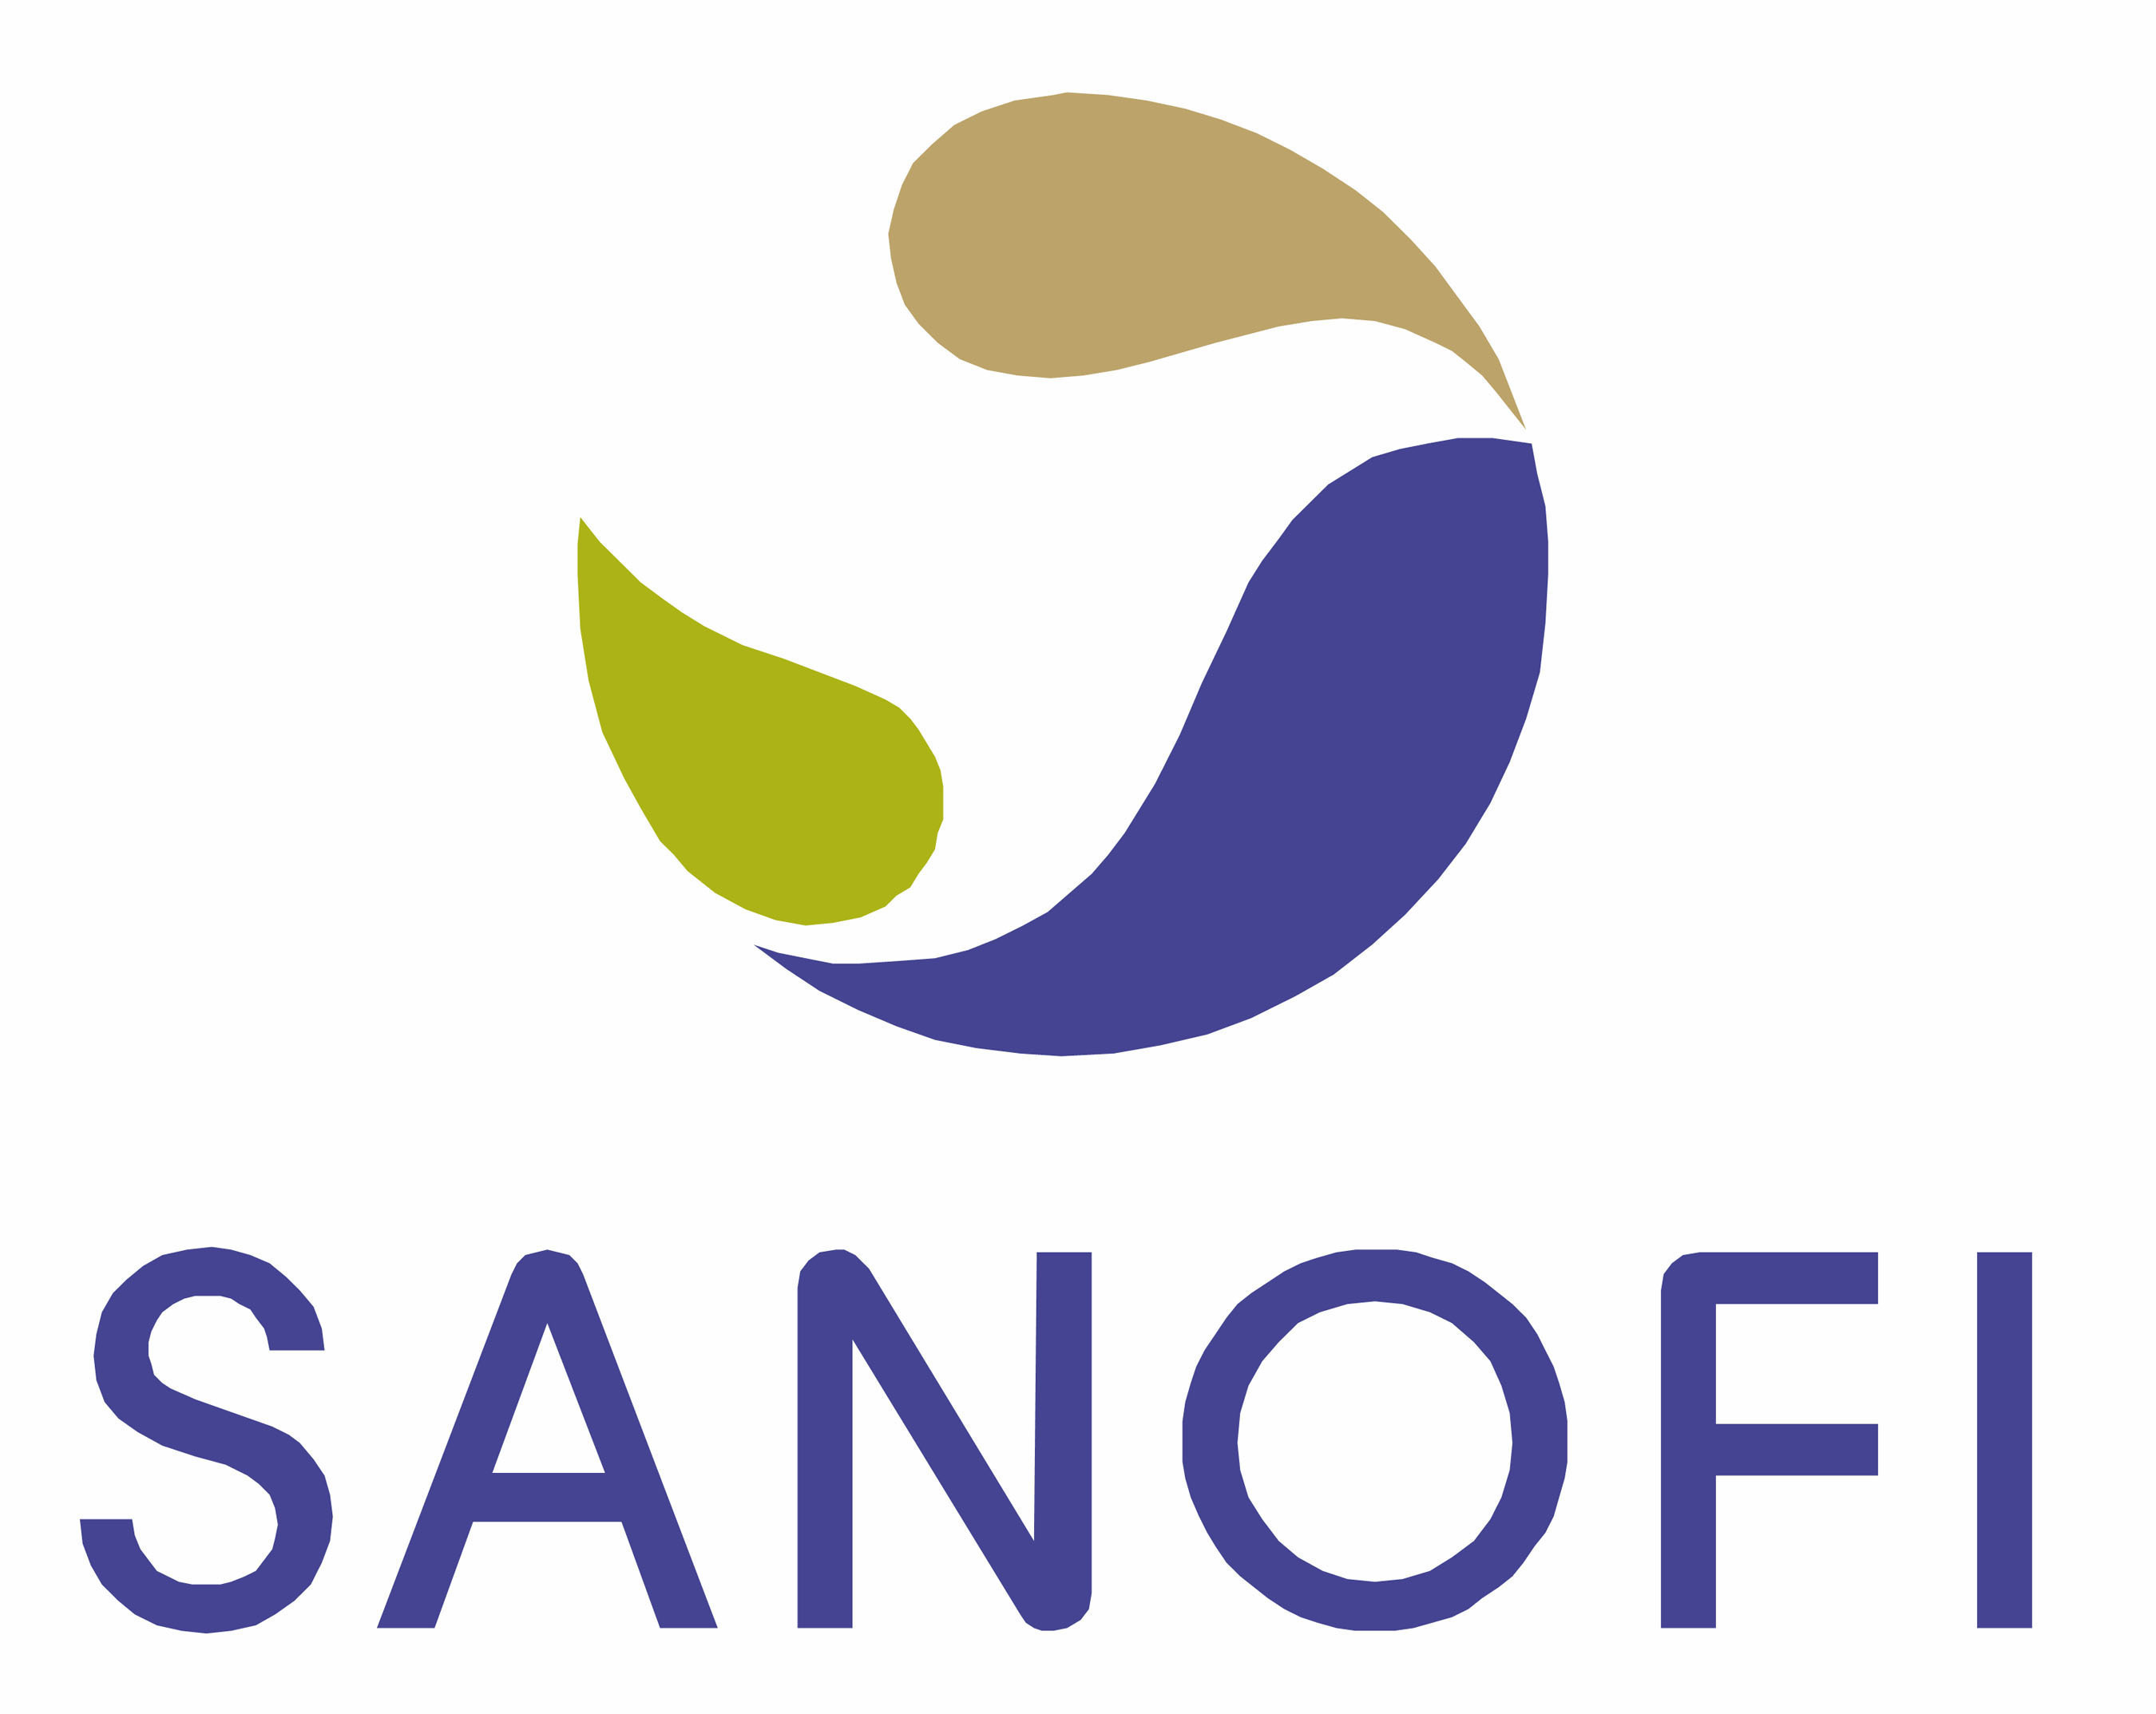 Sanofi logo. (PRNewsFoto/Sanofi) (PRNewsFoto/)